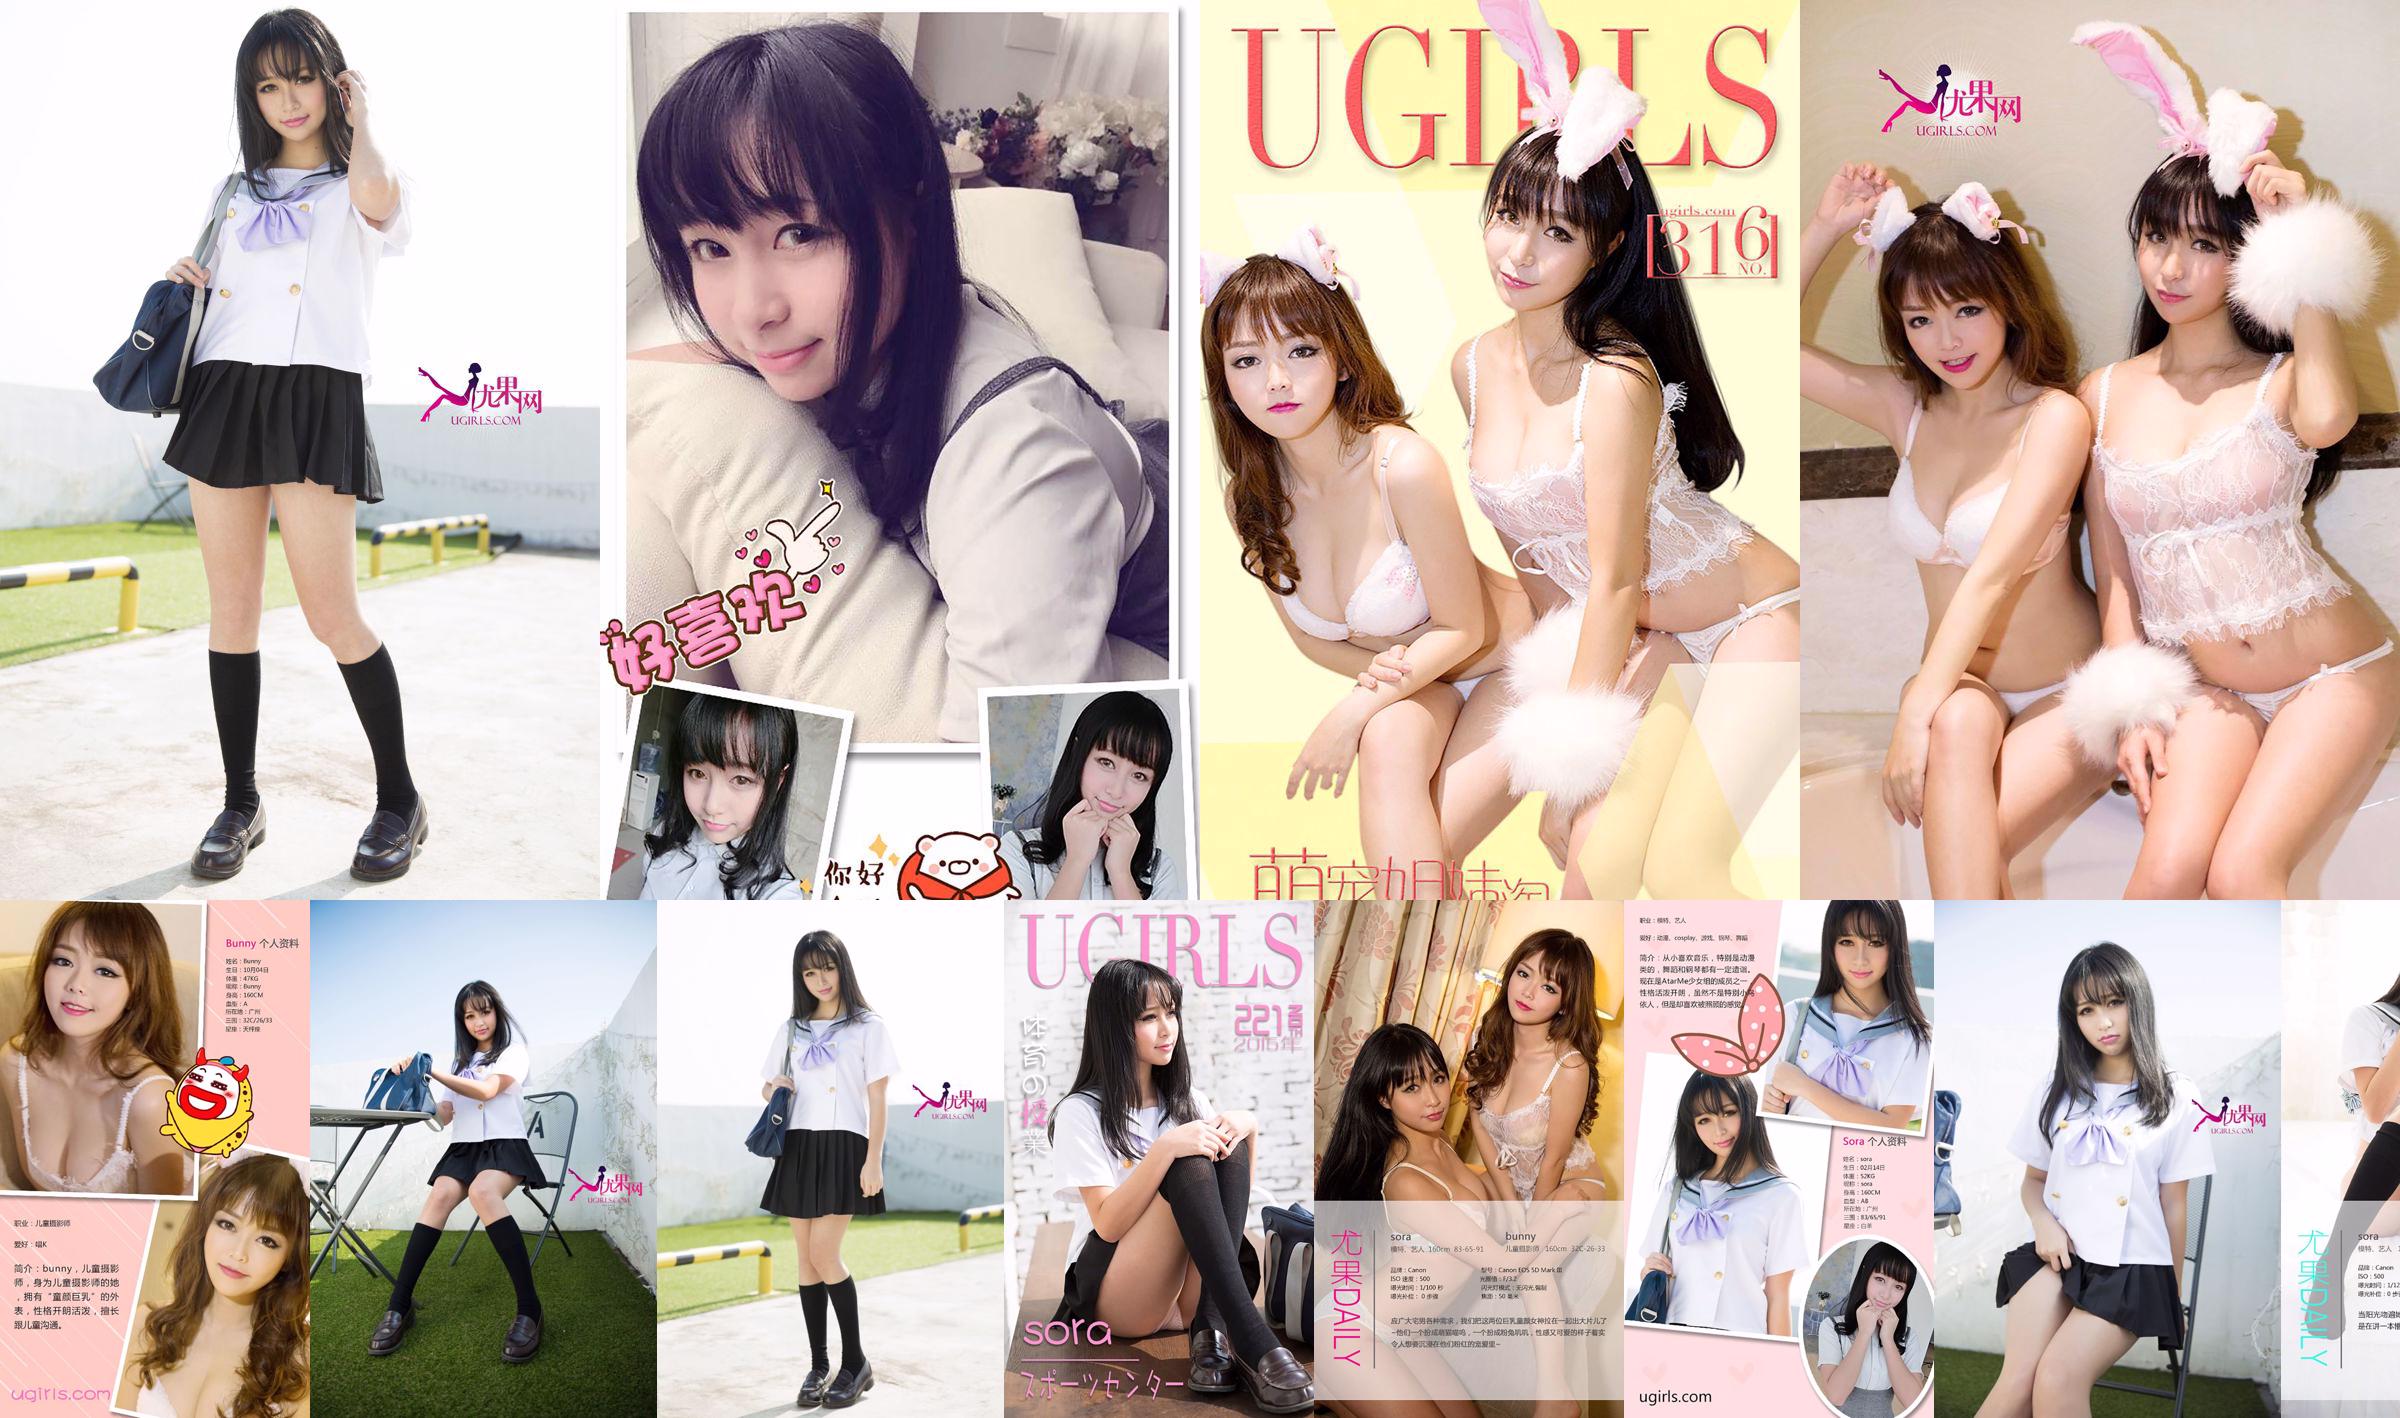 소라 "일본 교복 여자 저널"[Ugirls] U142 No.79b68a 페이지 12